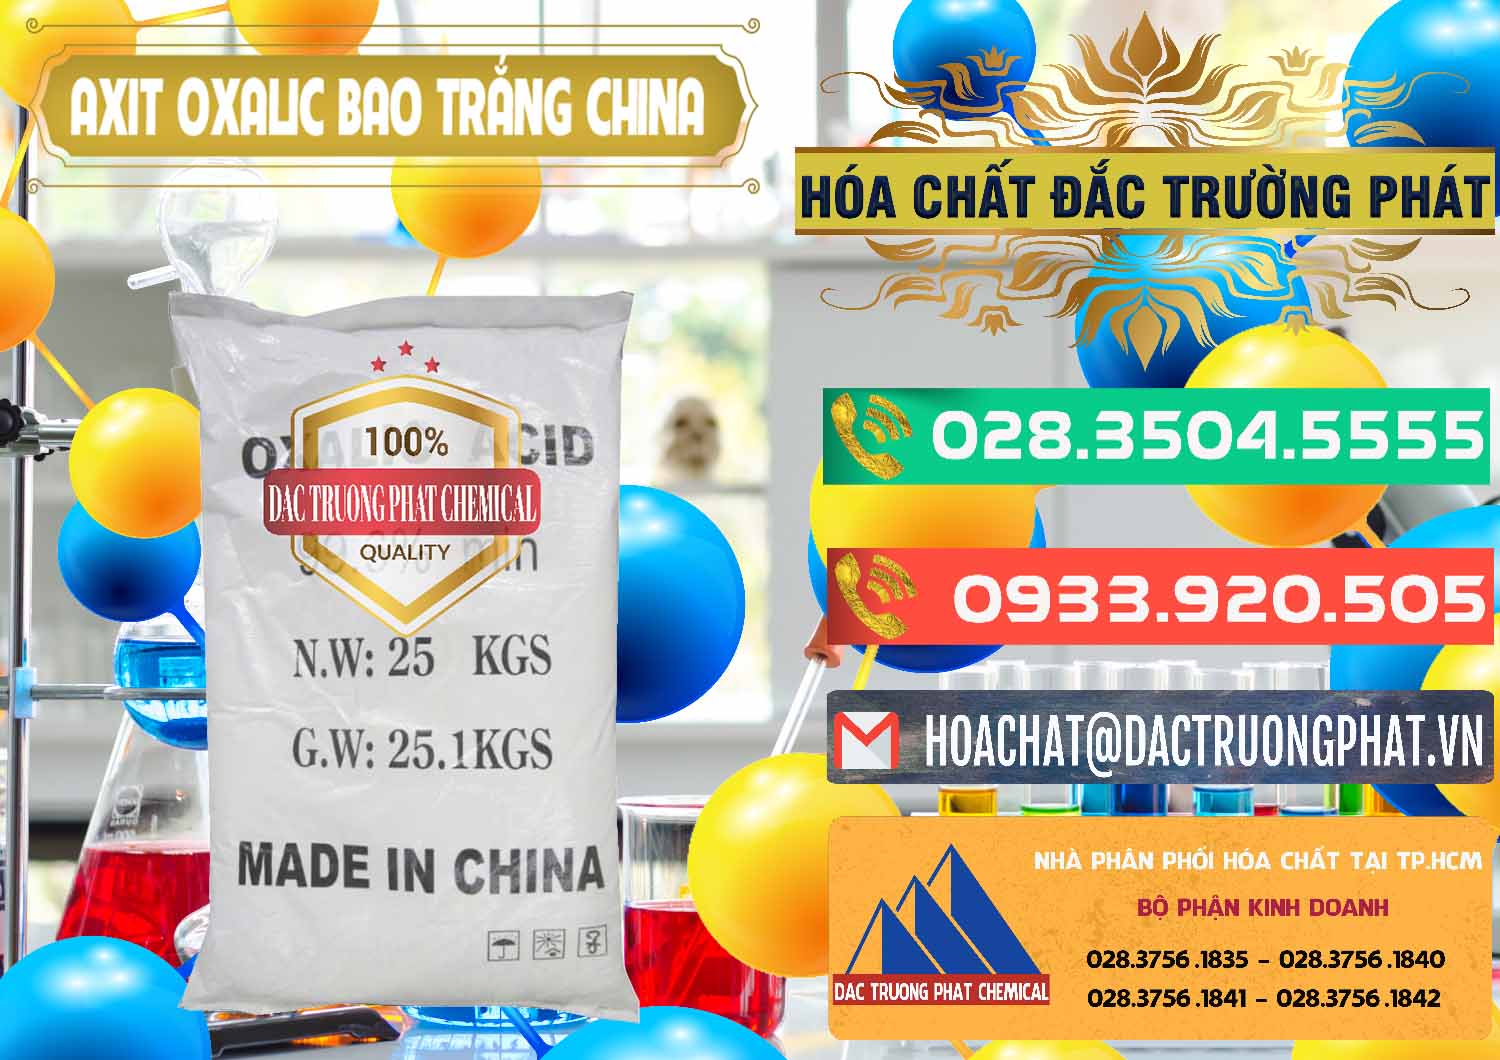 Công ty chuyên cung cấp và bán Acid Oxalic – Axit Oxalic 99.6% Bao Trắng Trung Quốc China - 0270 - Nơi chuyên phân phối - kinh doanh hóa chất tại TP.HCM - congtyhoachat.com.vn